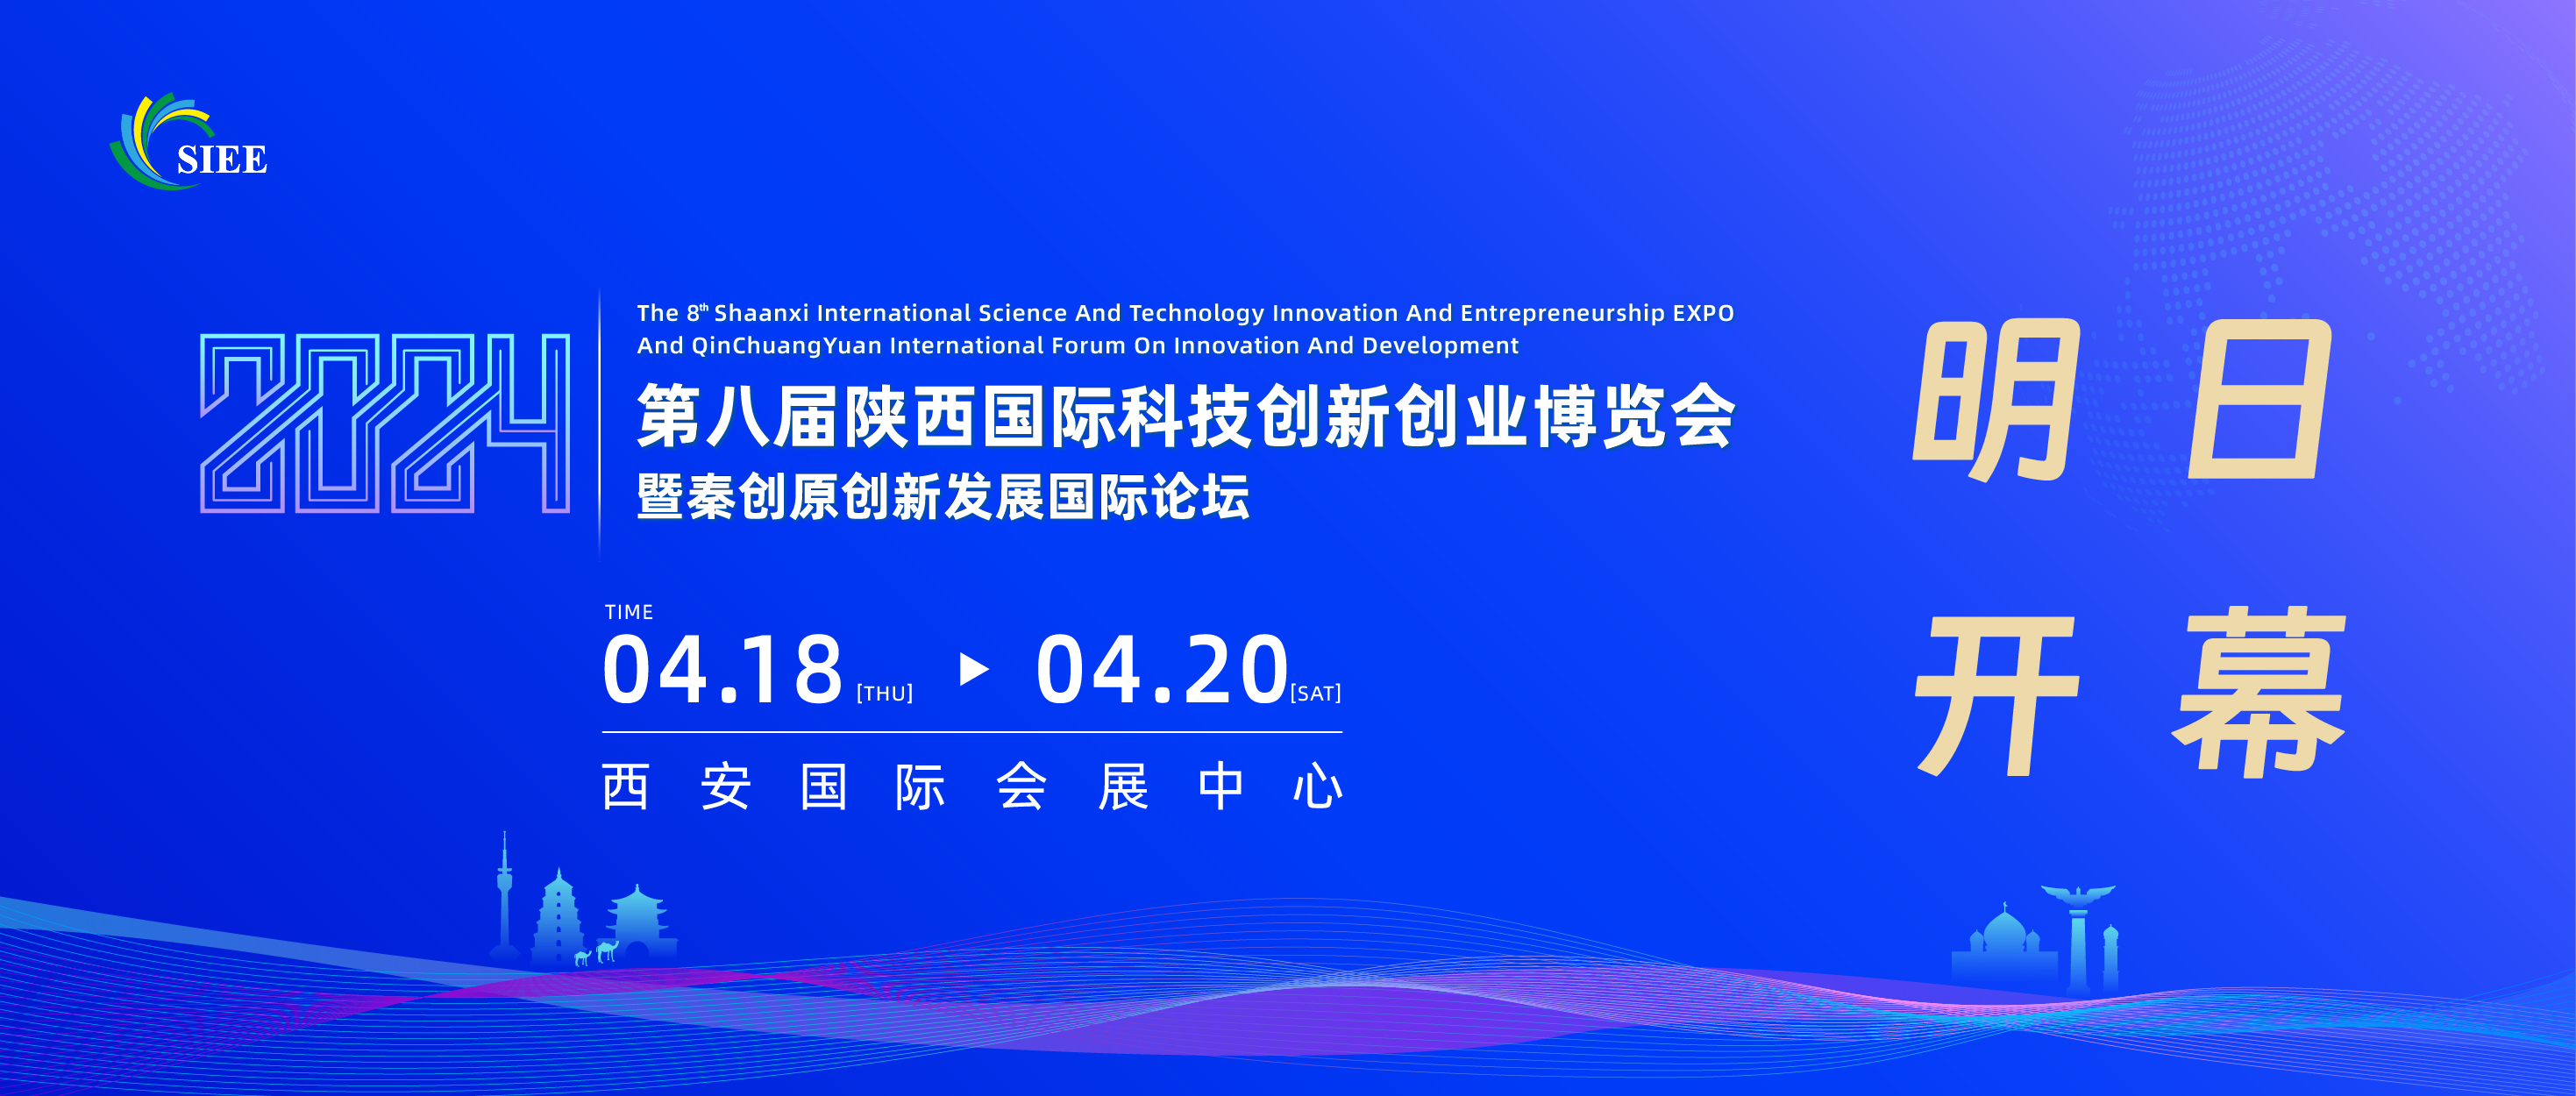 明日开幕|第八届陕西国际科技创新创业博览会暨秦创原创新发展国际论坛4月18日在西安开幕